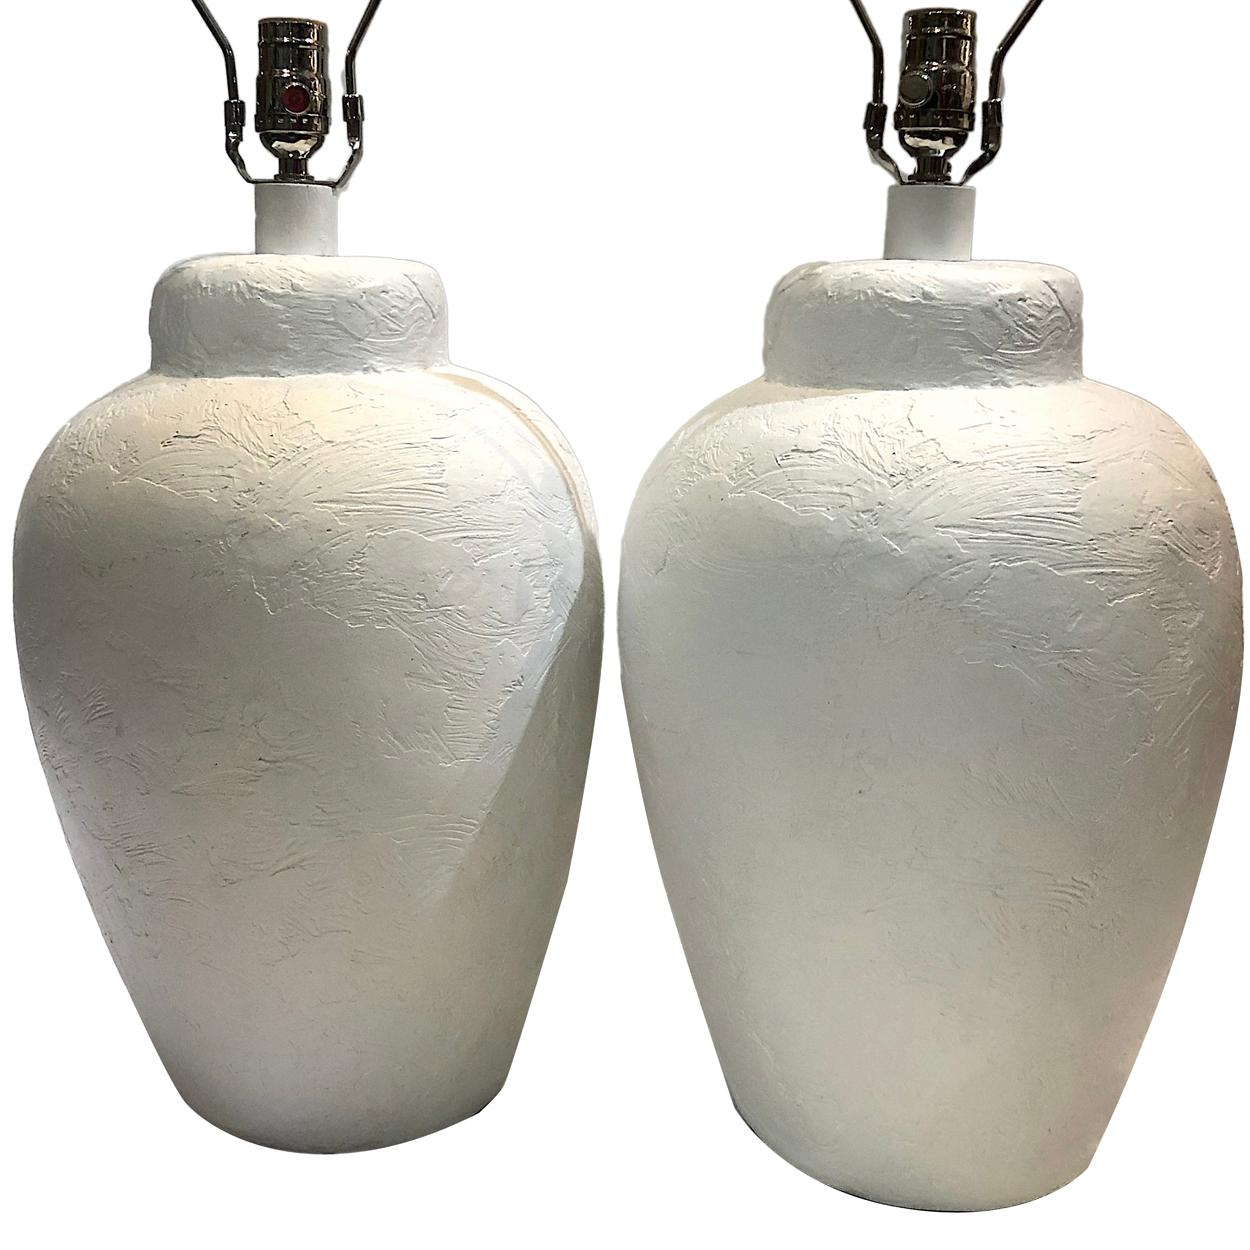 Une paire de grandes lampes de table italiennes en céramique blanche texturée datant des années 1960.

Mesures :
Hauteur du corps 21
Point le plus large 11.5